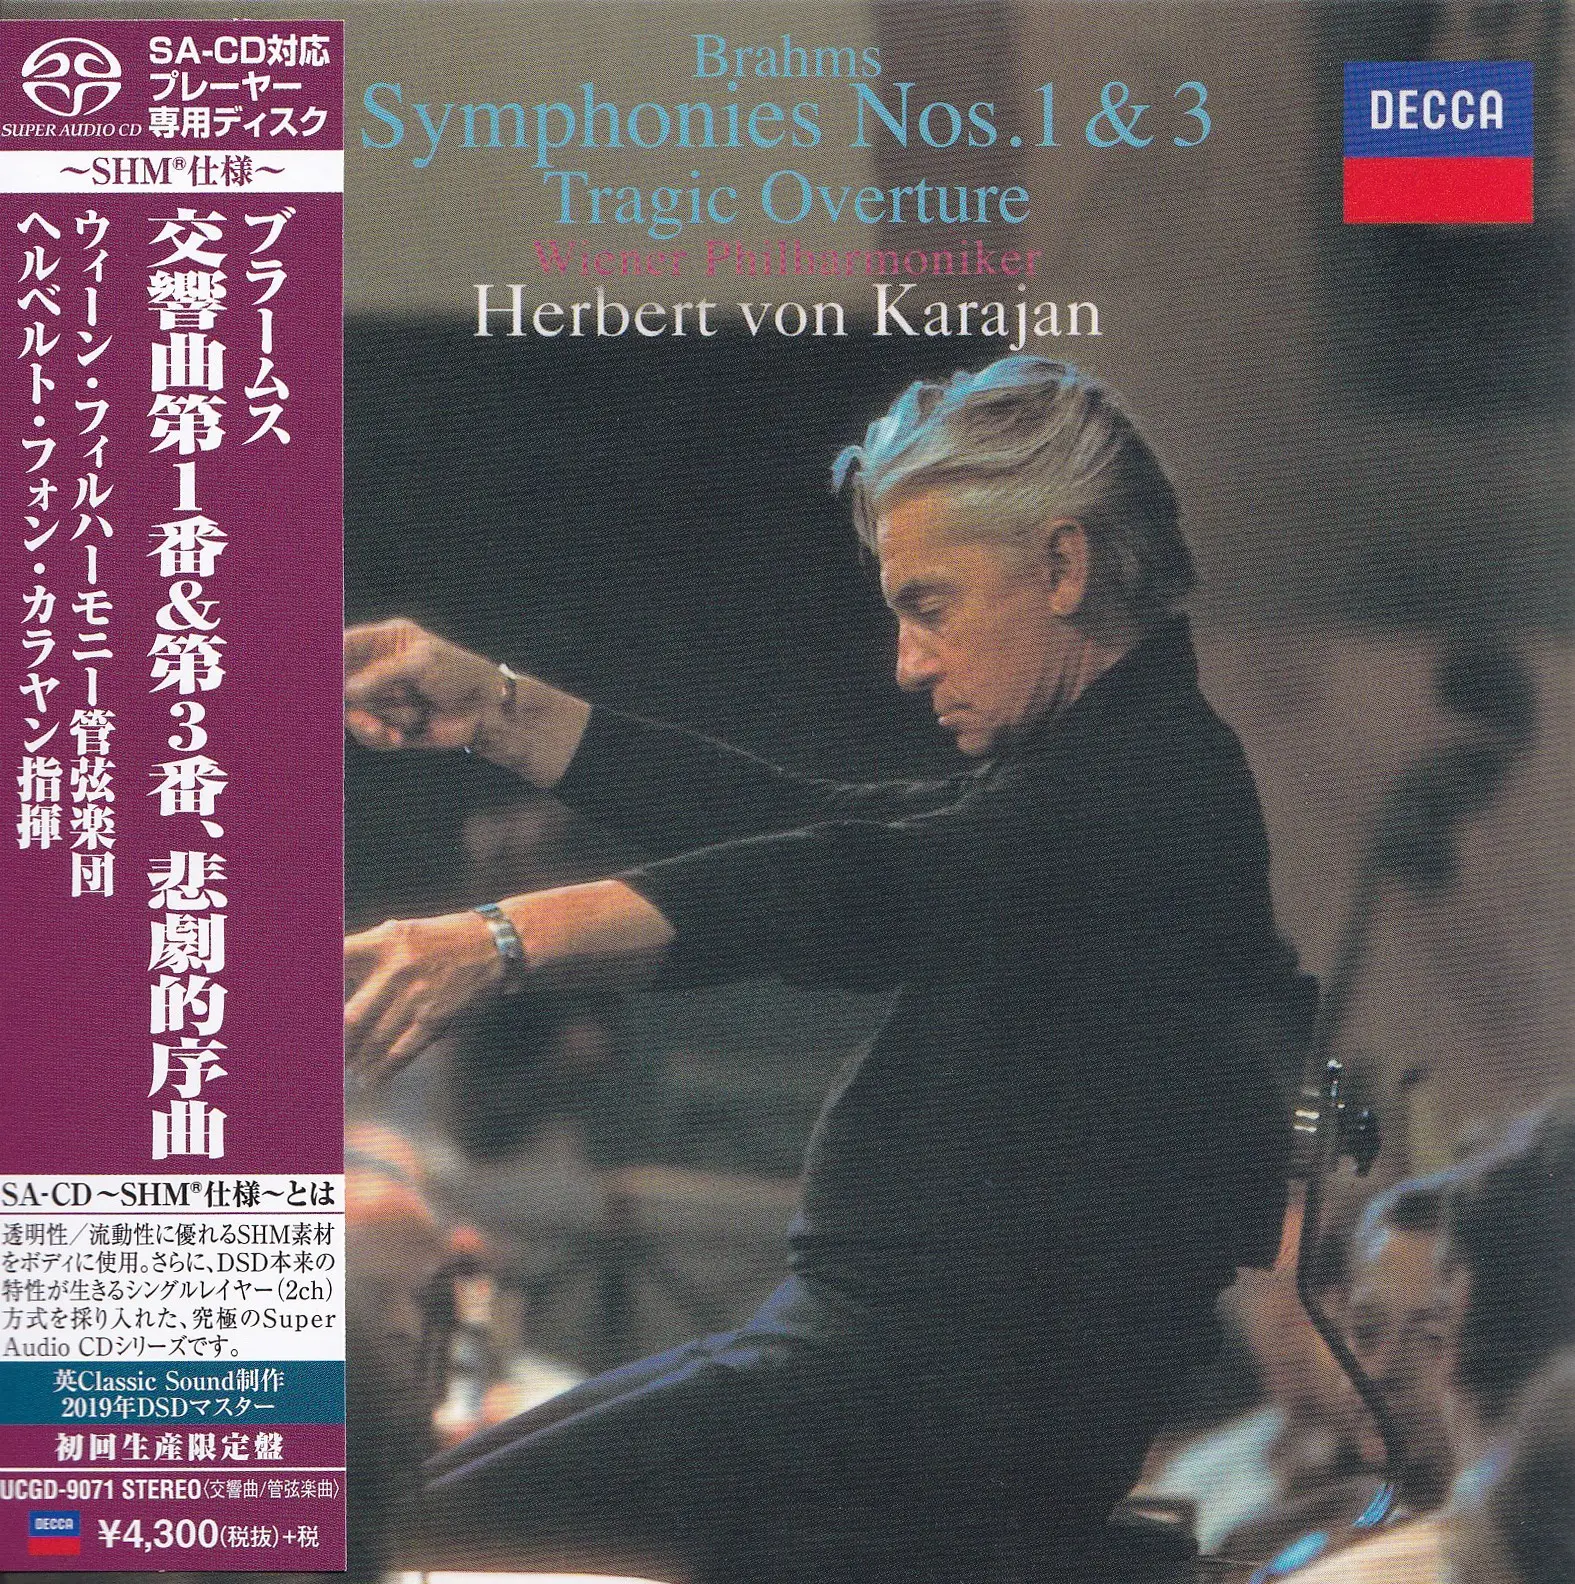 Herbert von Karajan, Wiener Philharmoniker – Brahms: Symphonies 1 & 3; Tragic Overture (1960 & 1962) [Japan 2019] SACD ISO + DSF DSD64 + Hi-Res FLAC